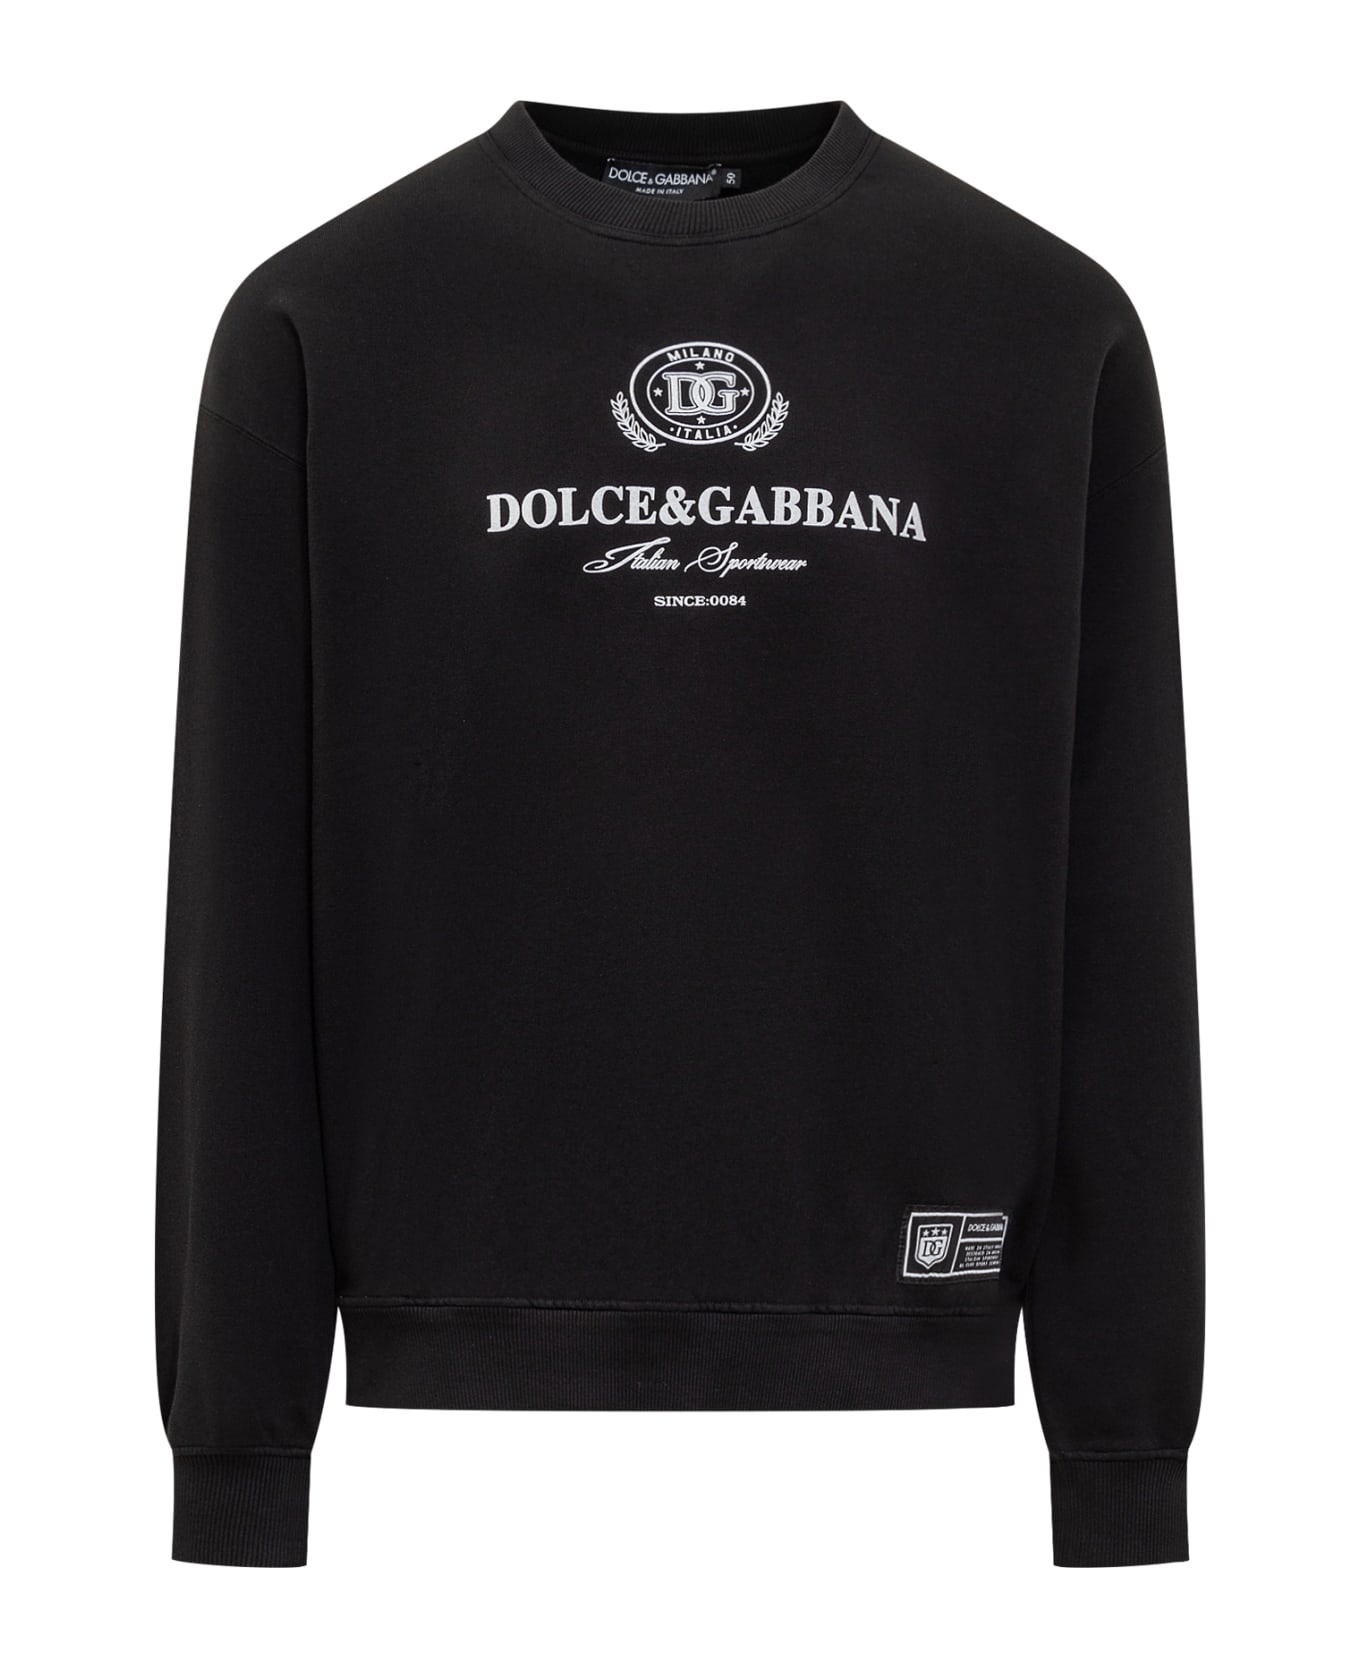 Dolce&gabbana Italian Sportswear Hoodie - 1